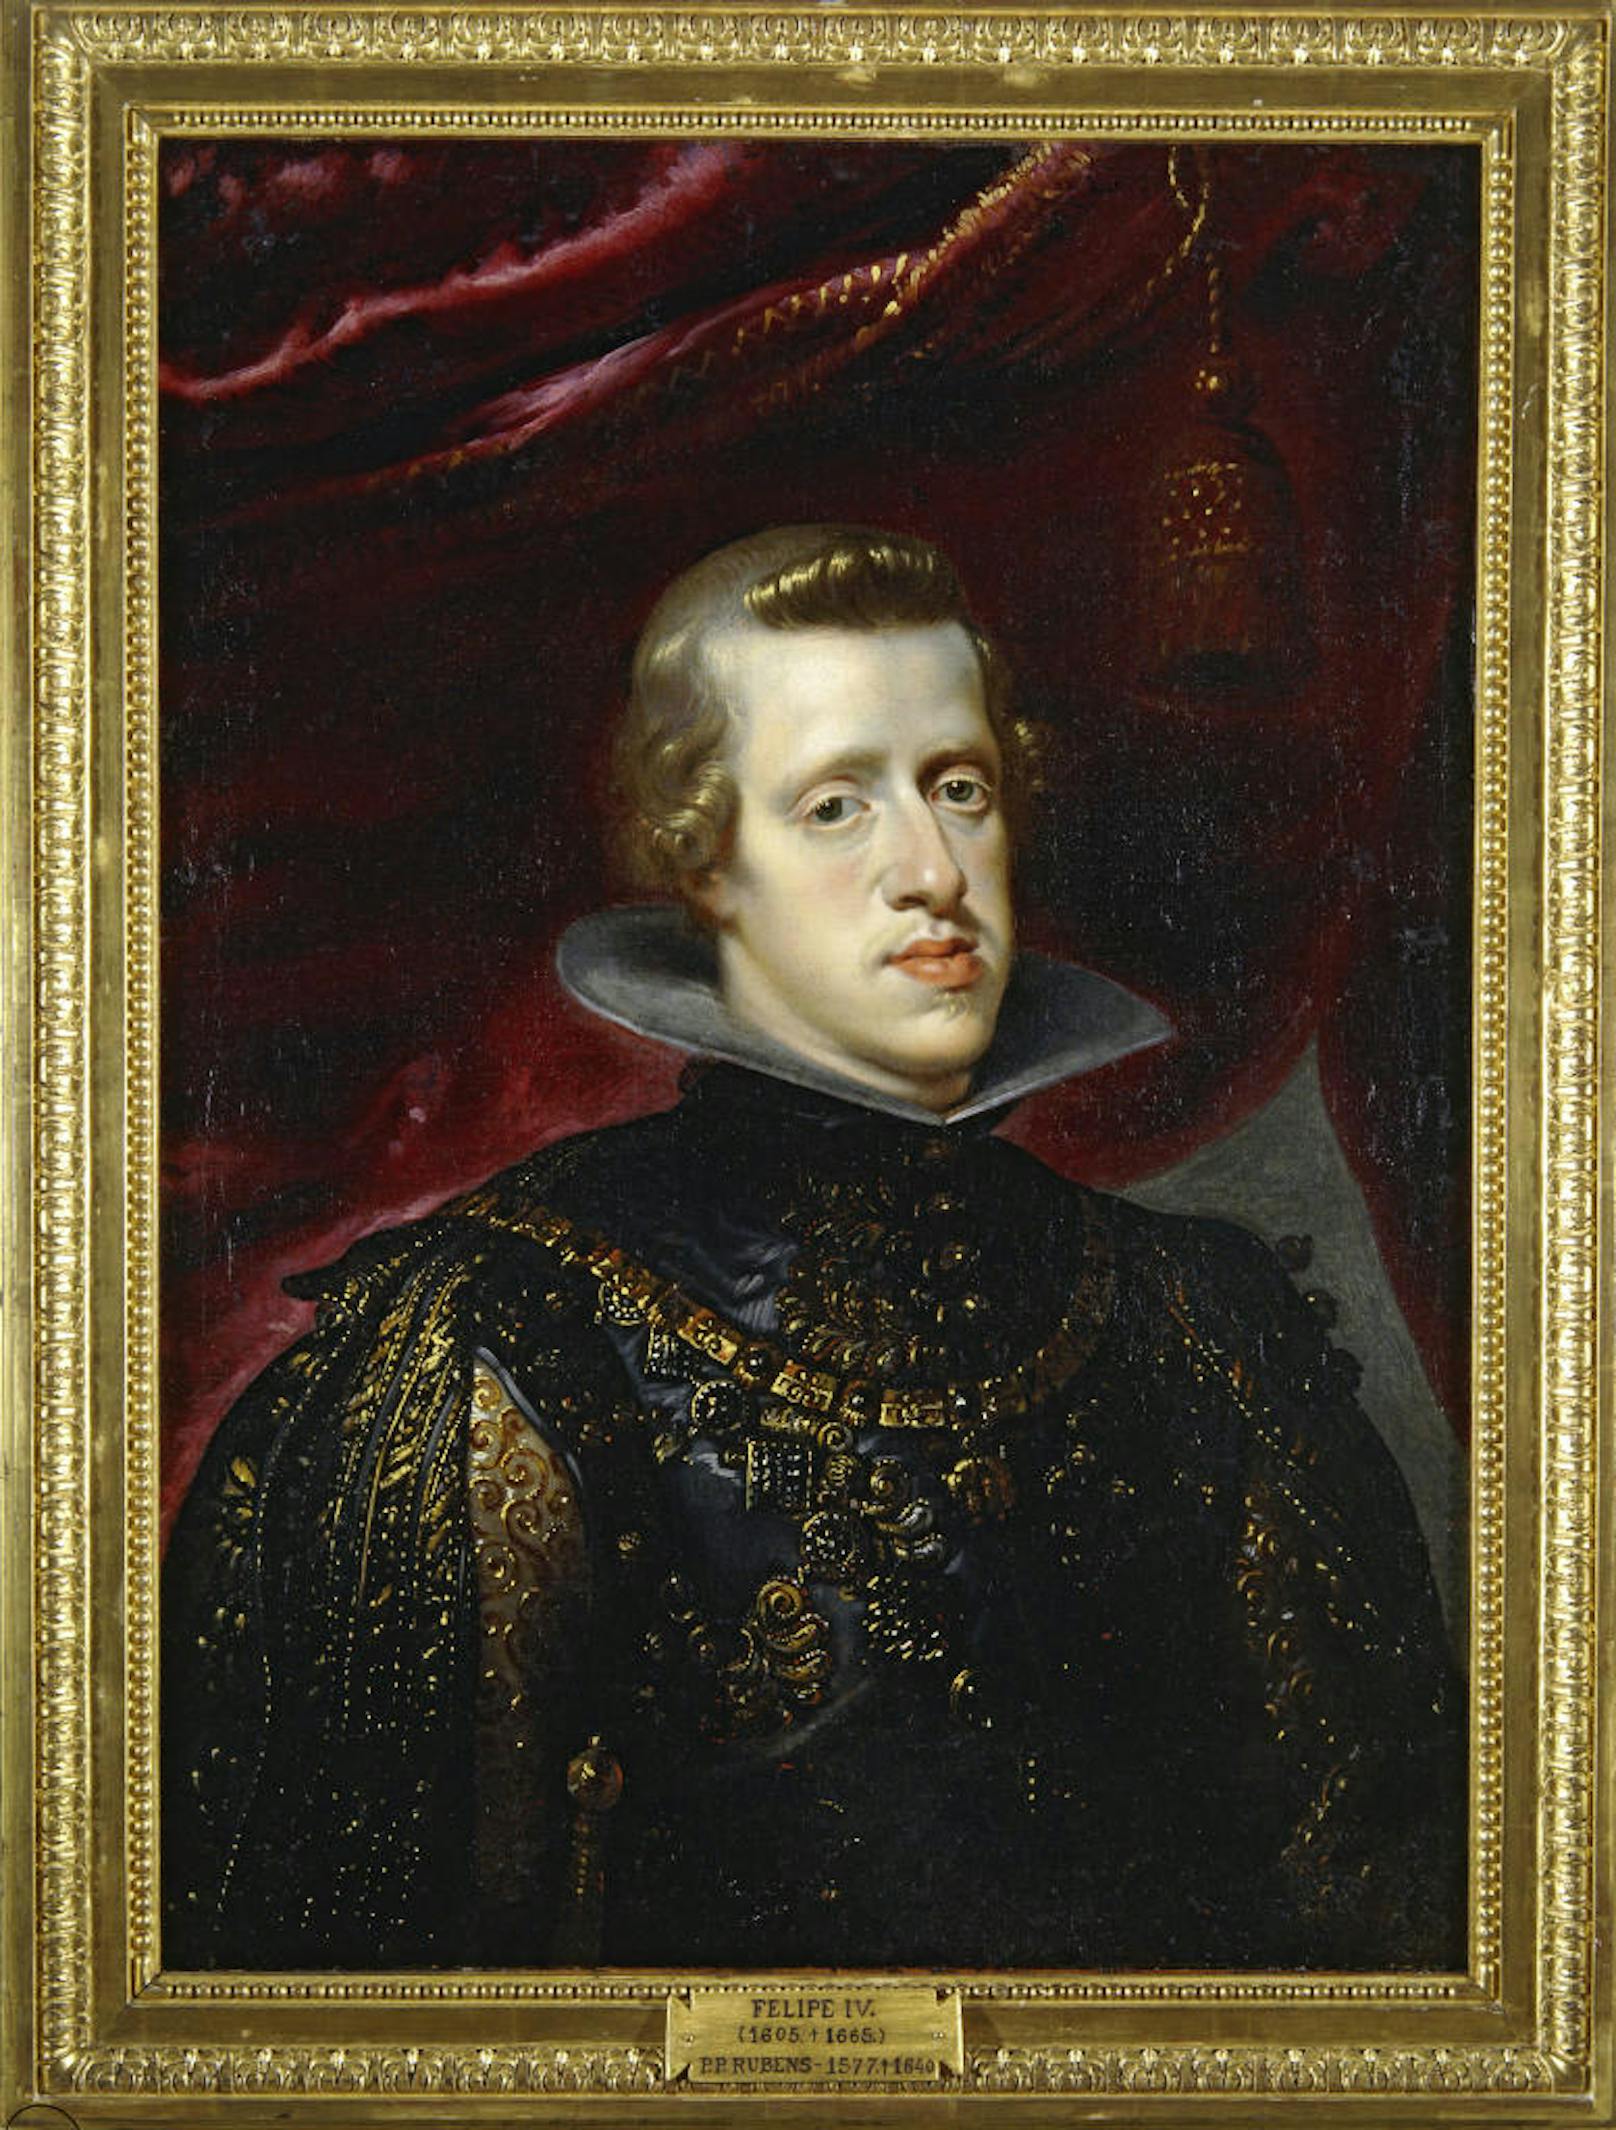 König Philip IV. von Spanien (1505-1665) war der Sohn von König Philipp III. und Erzherzogin Maria Anna, der Tochter des Habsburger Kaisers Ferdinand III. 